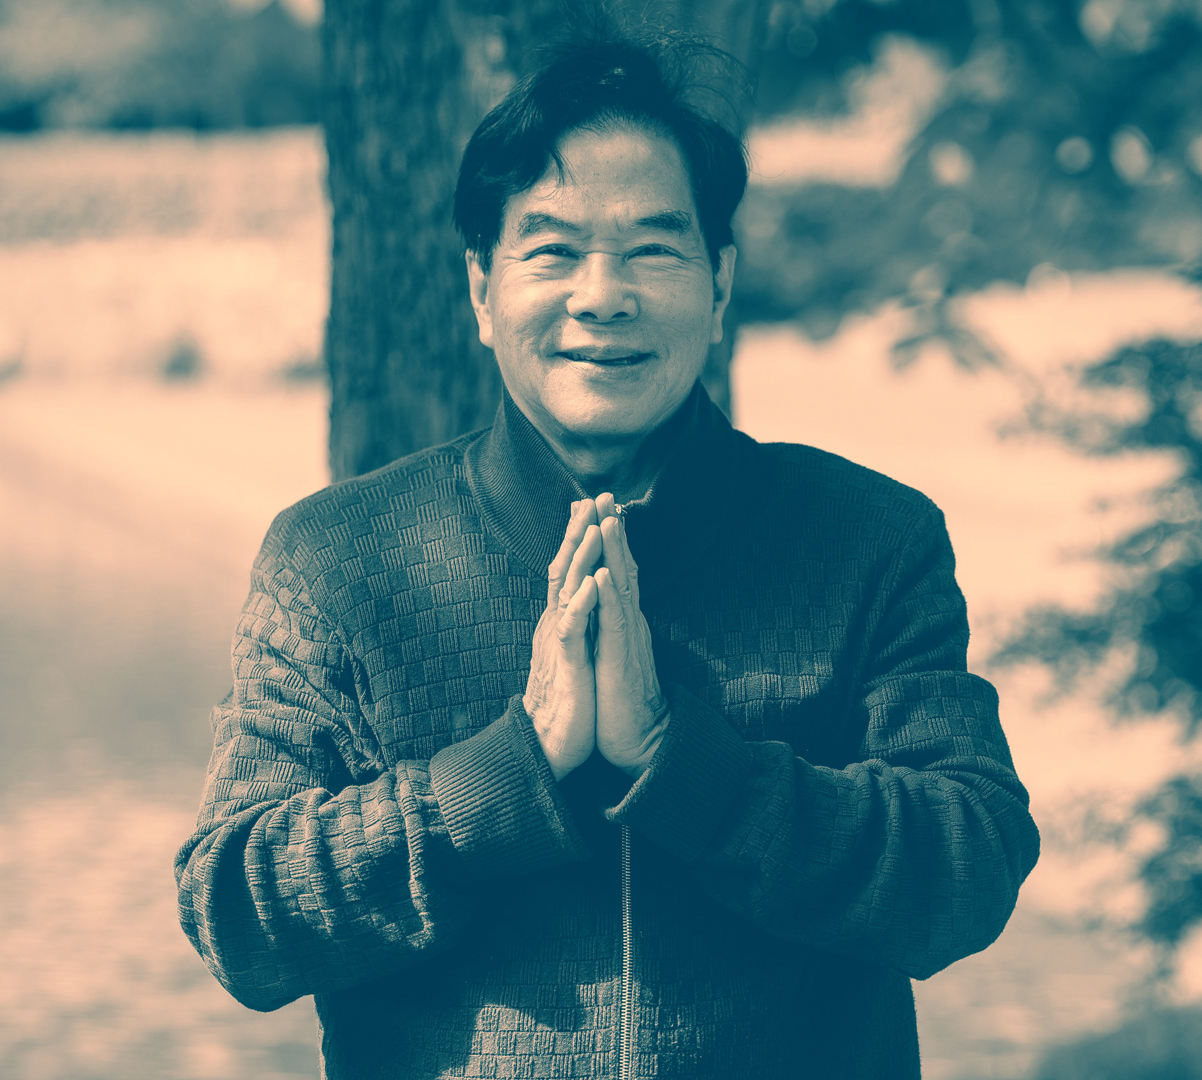 Master Mantak Chia smiling and praying 2020 saying thankyou to his students